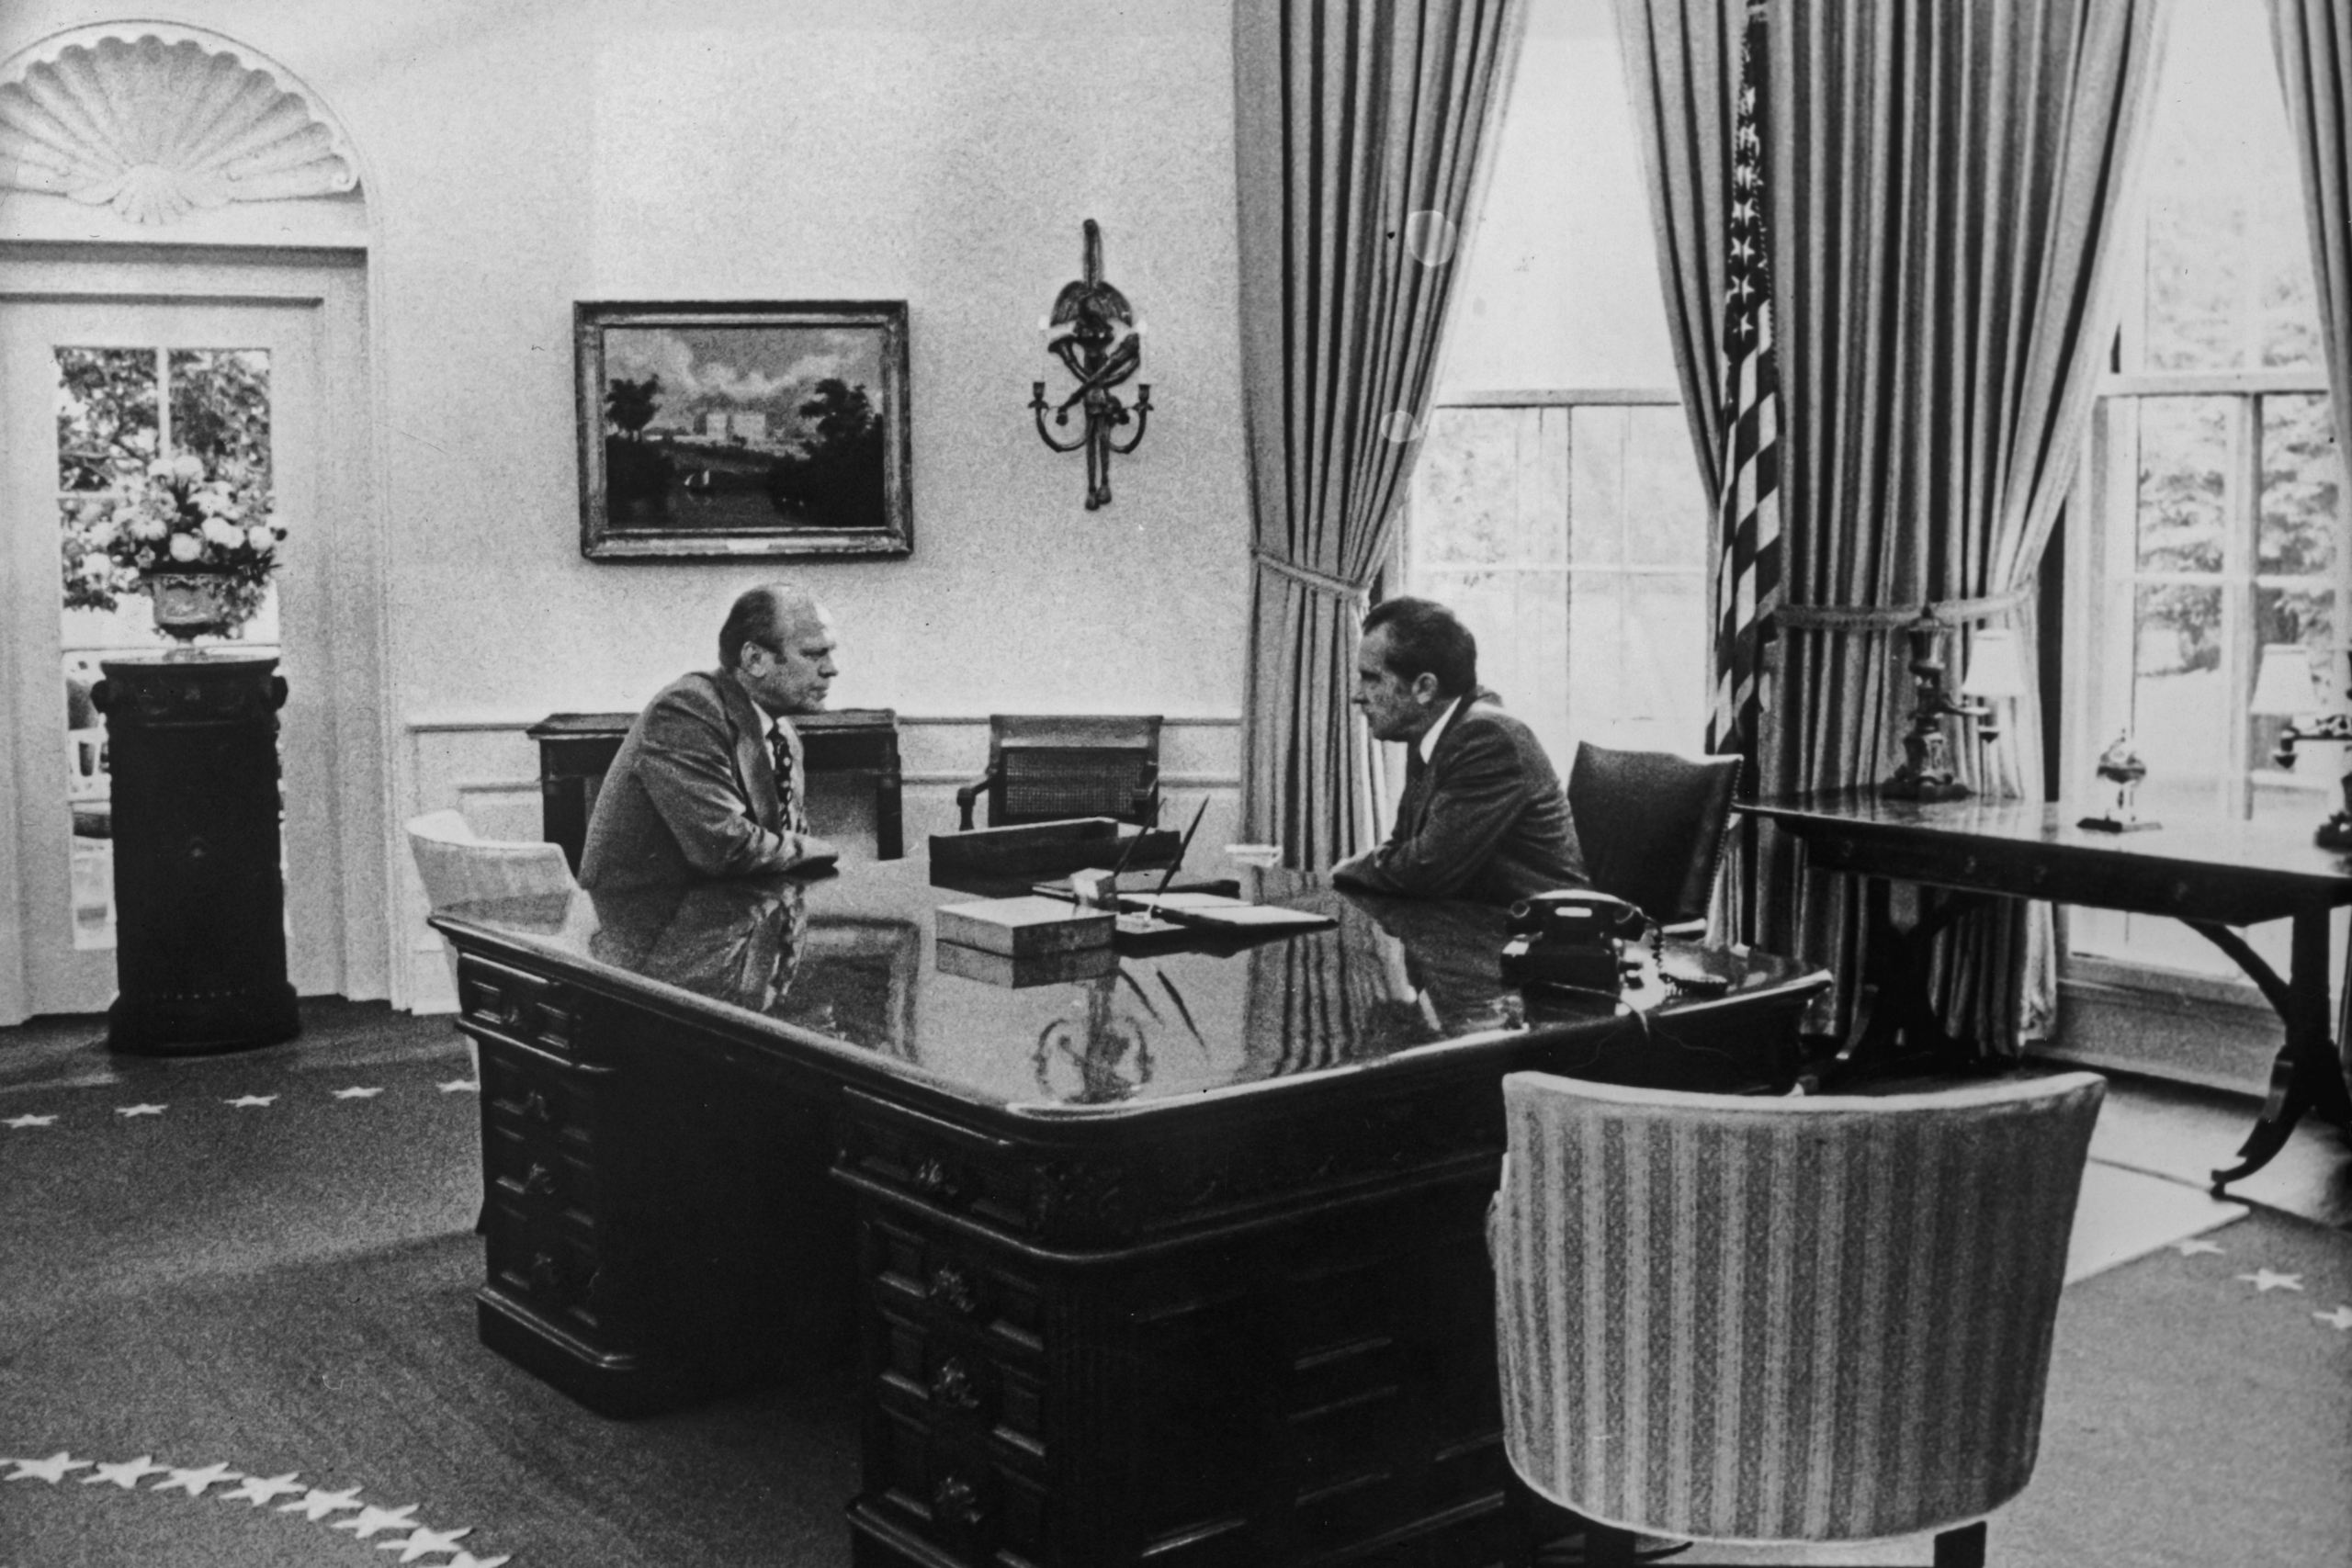 Tổng thống Richard Nixon (phải) và Phó Tổng thống Gerald Ford đối mặt nhau tại Oval Office vào ngày ông Nixon từ chức, ngày 09/08/1974. (Ảnh: Hulton Archive/Getty Images)